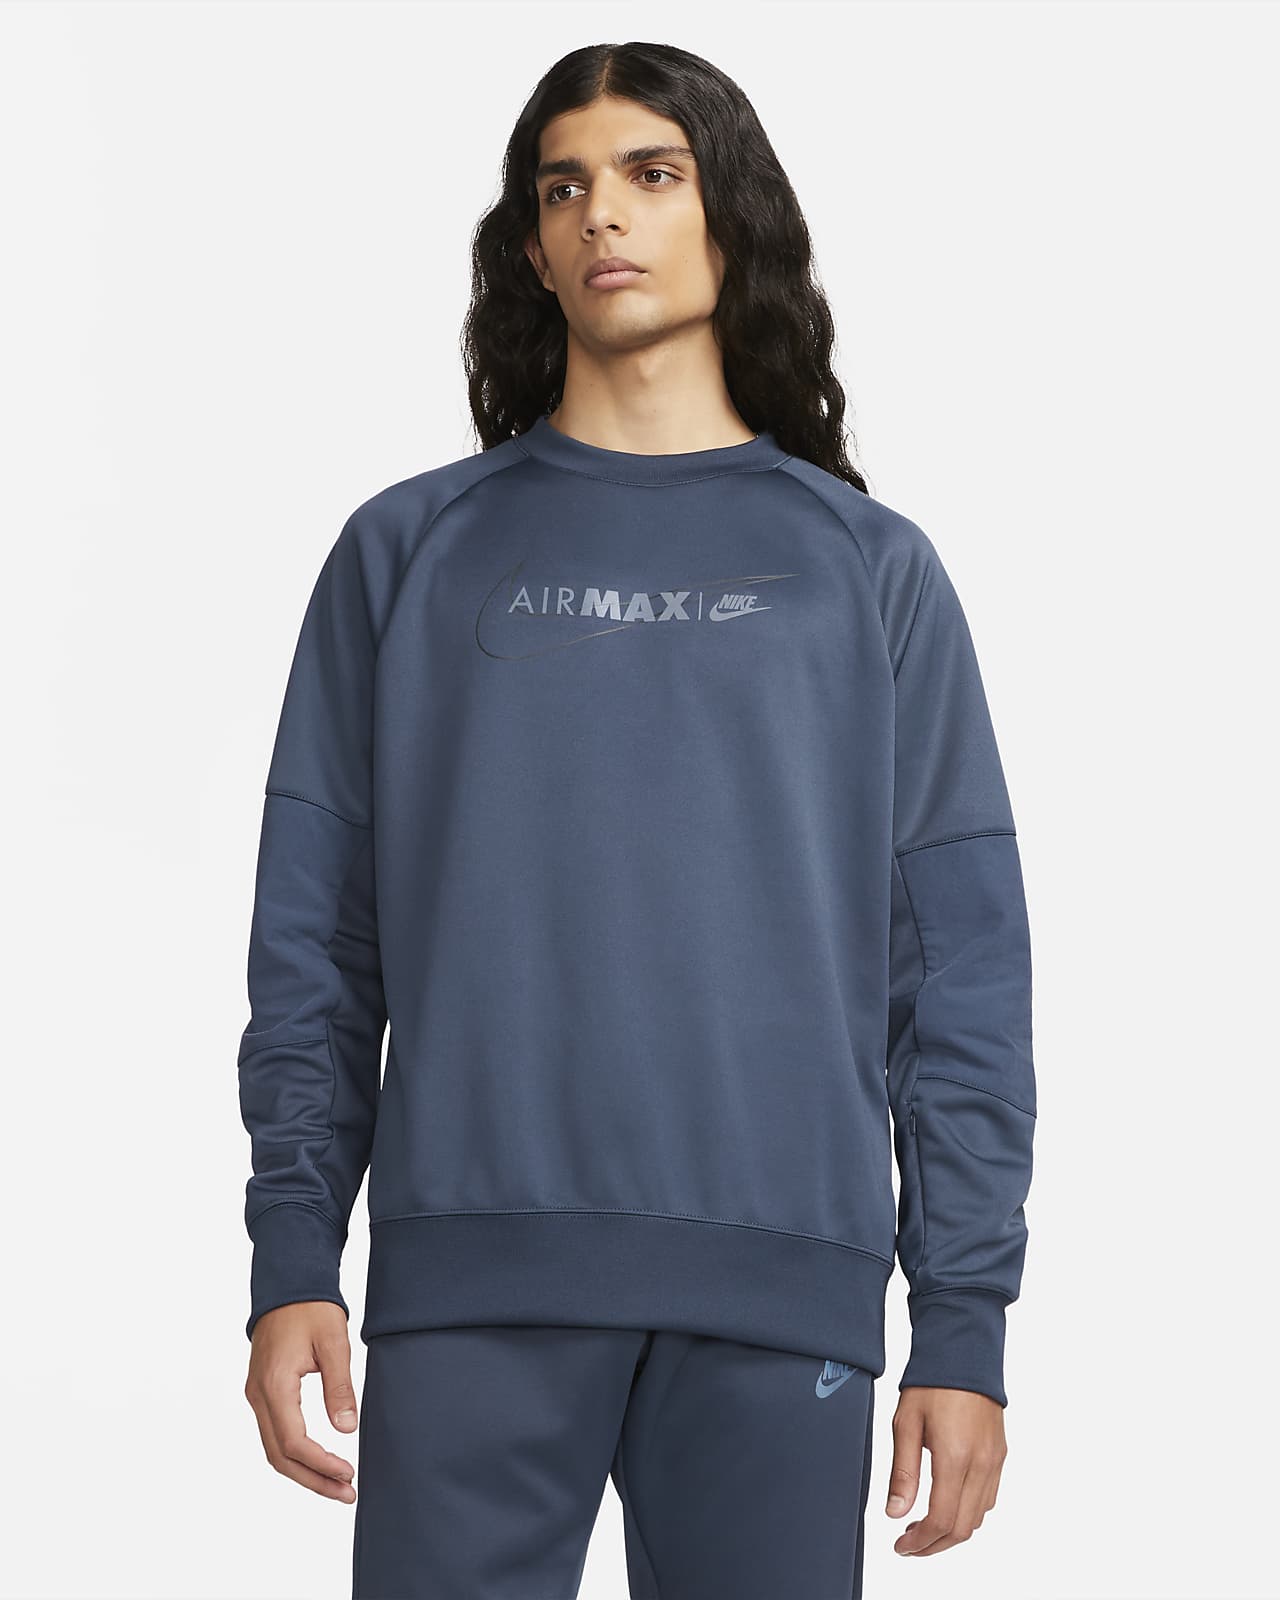 Nike Air Max Men's Sweatshirt. Nike RO